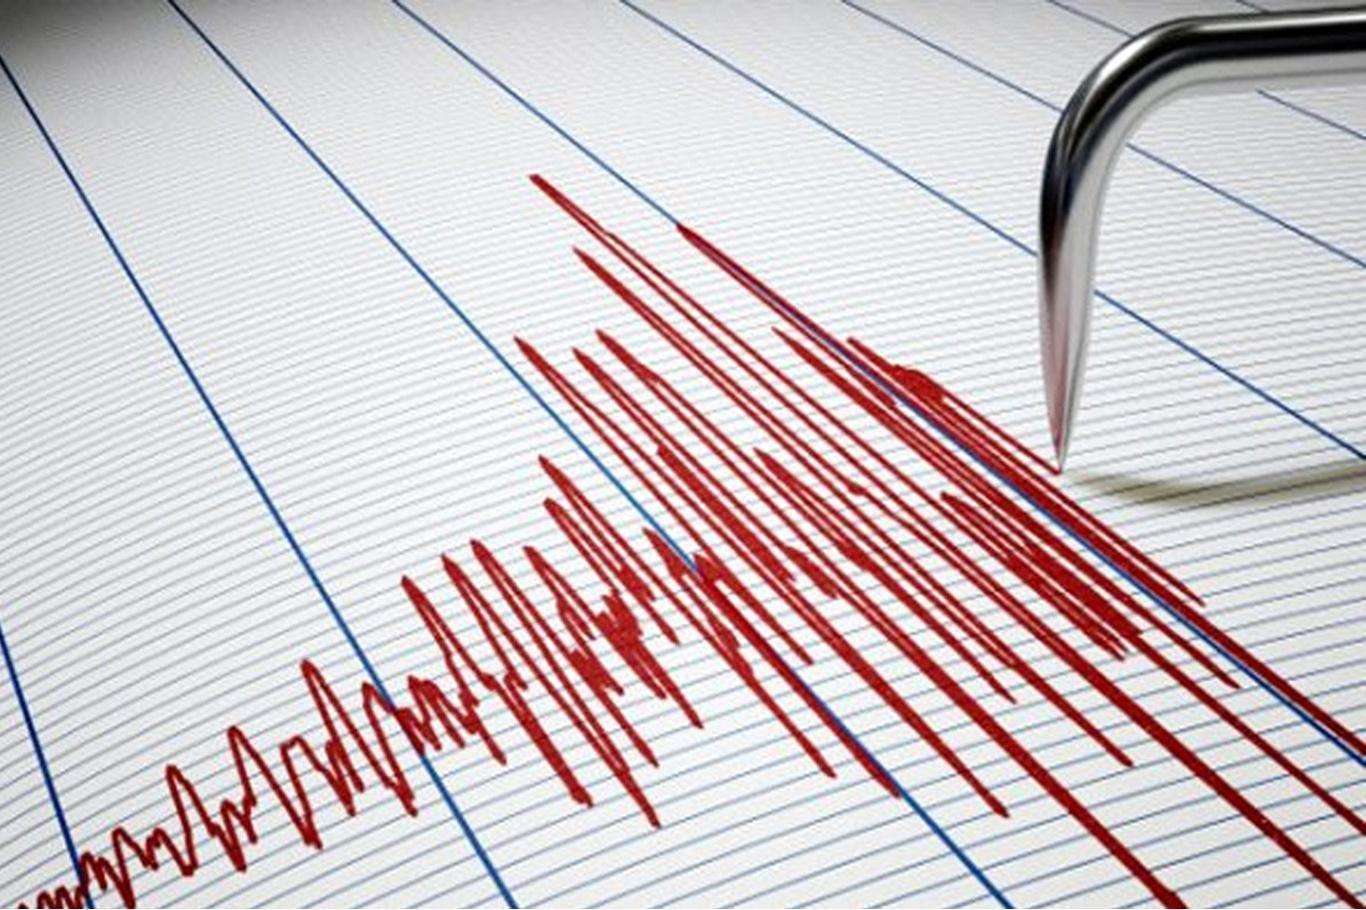 7.1 magnitude earthquake hits off Indonesia coast